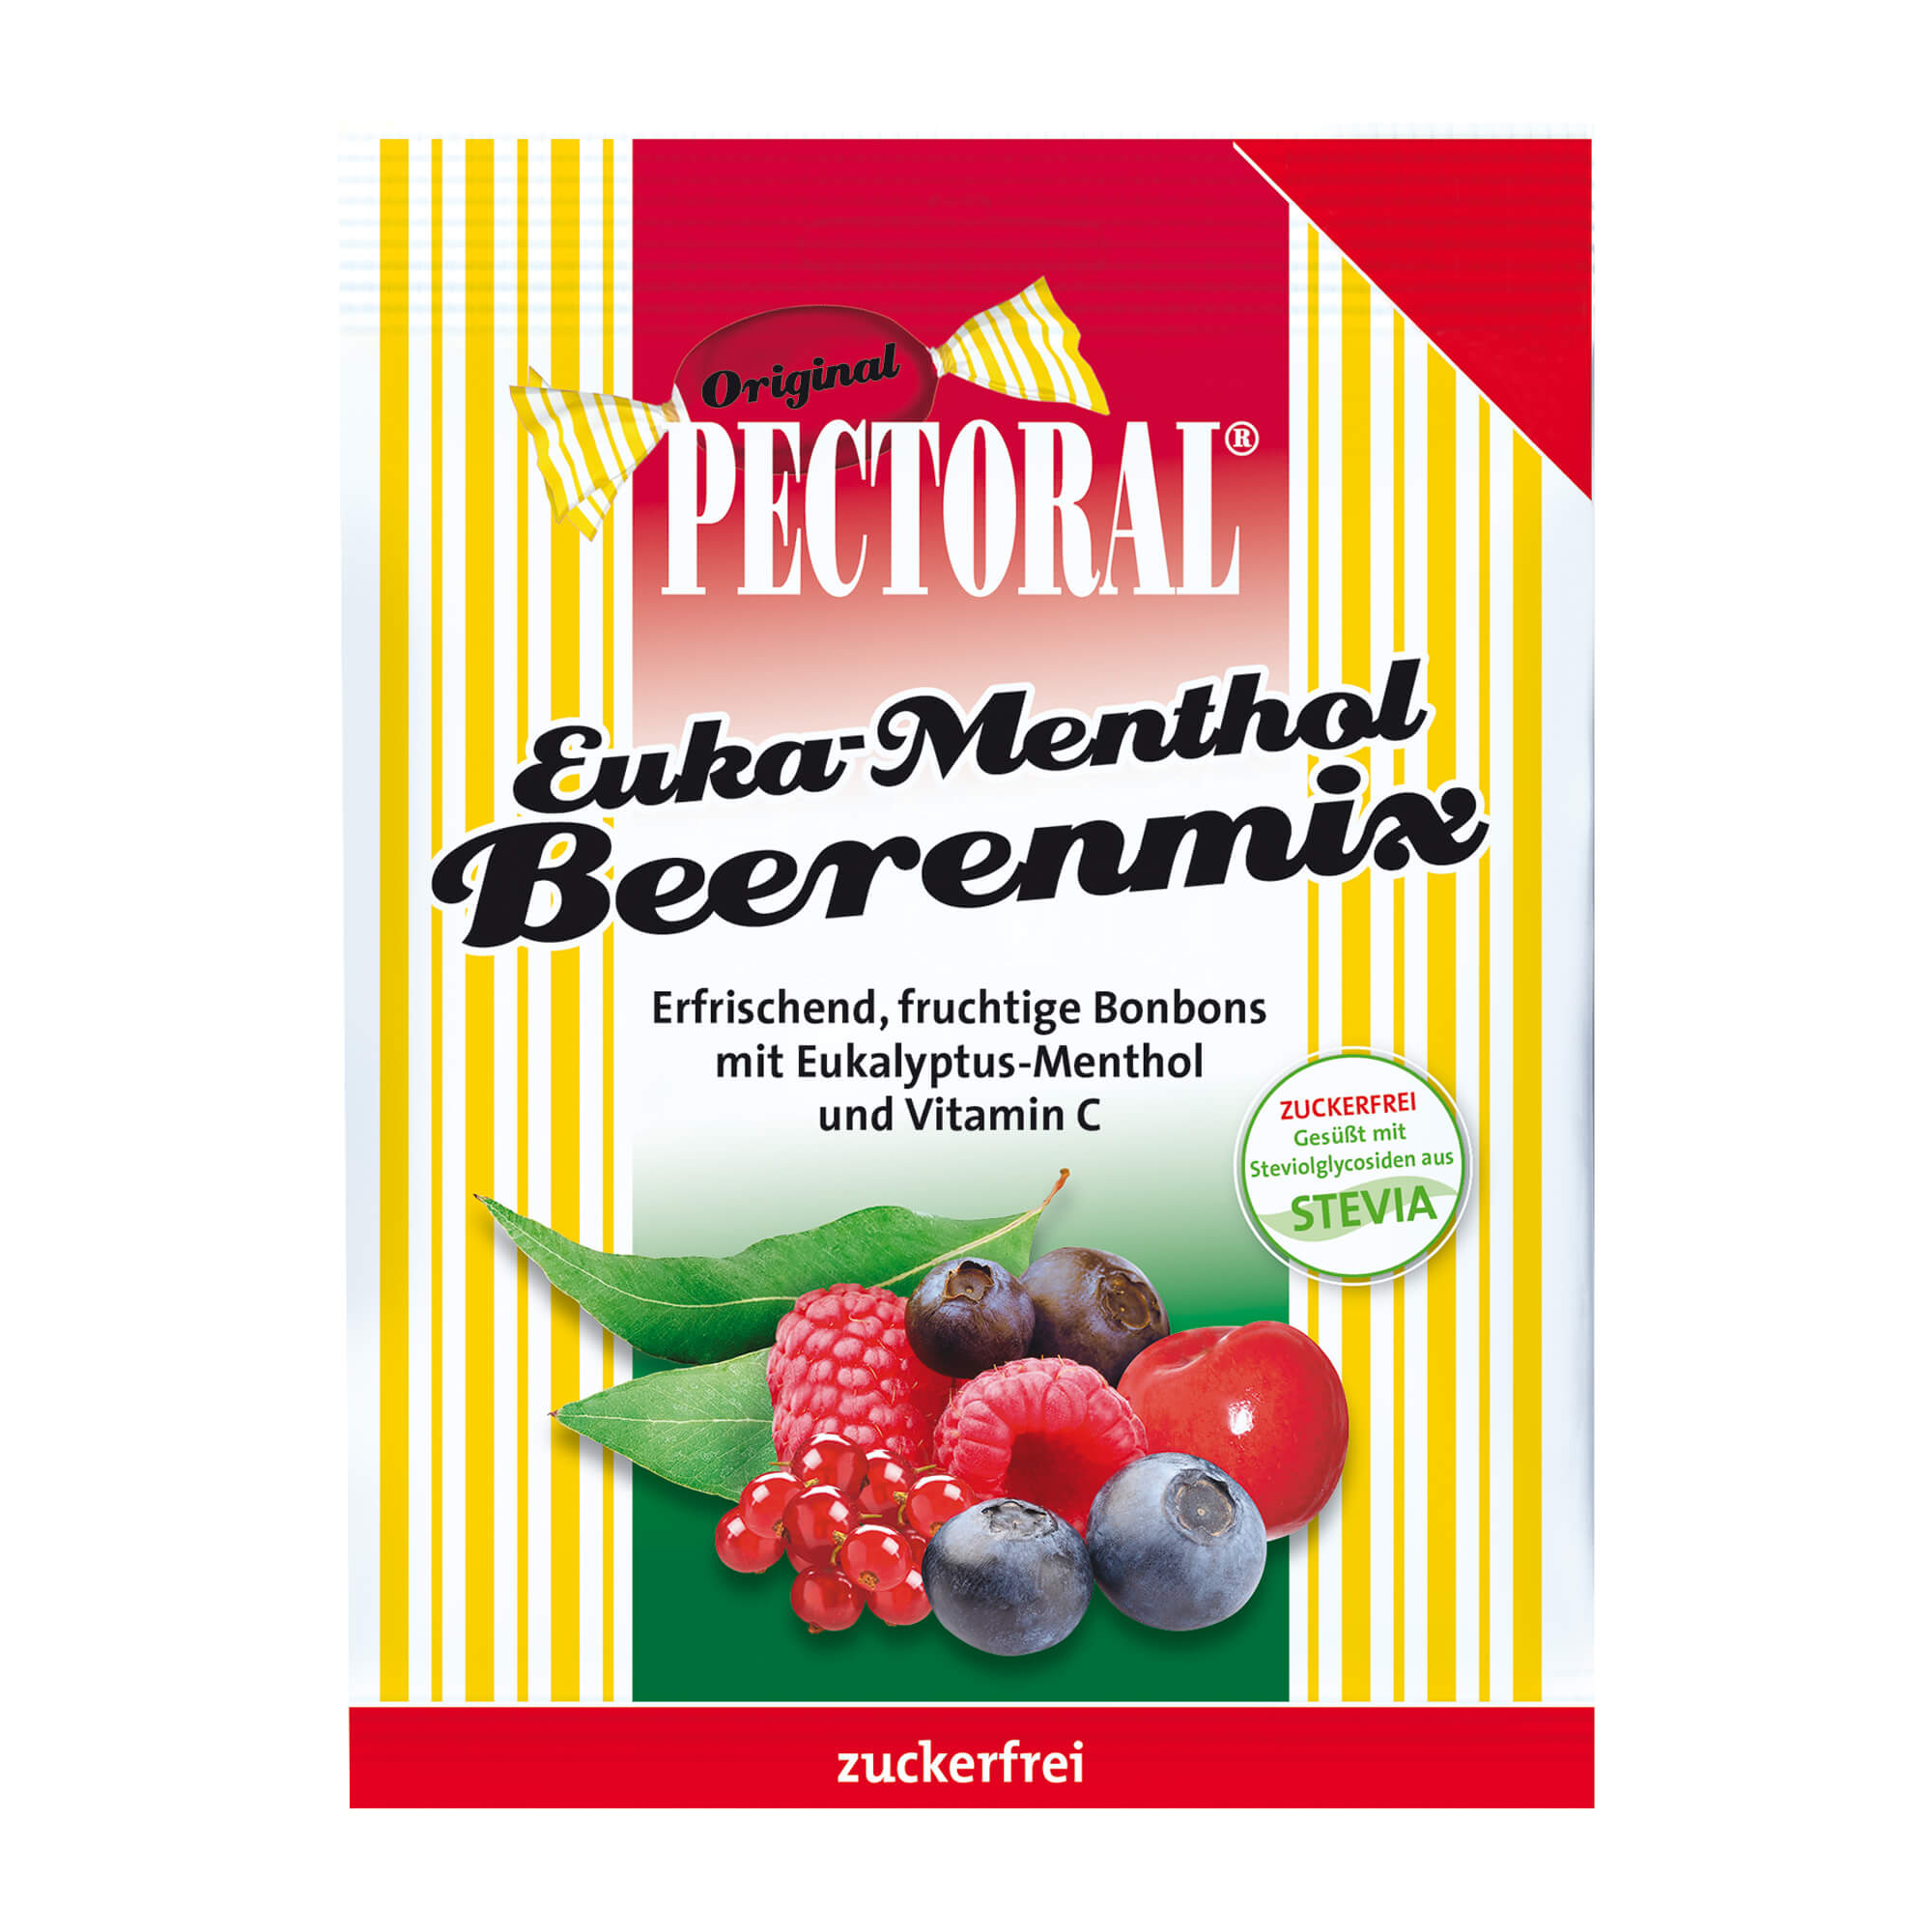 Lebensmittel. Pectoral Euka-Menthol Beerenmix Bonbons mit Süßungsmitteln.